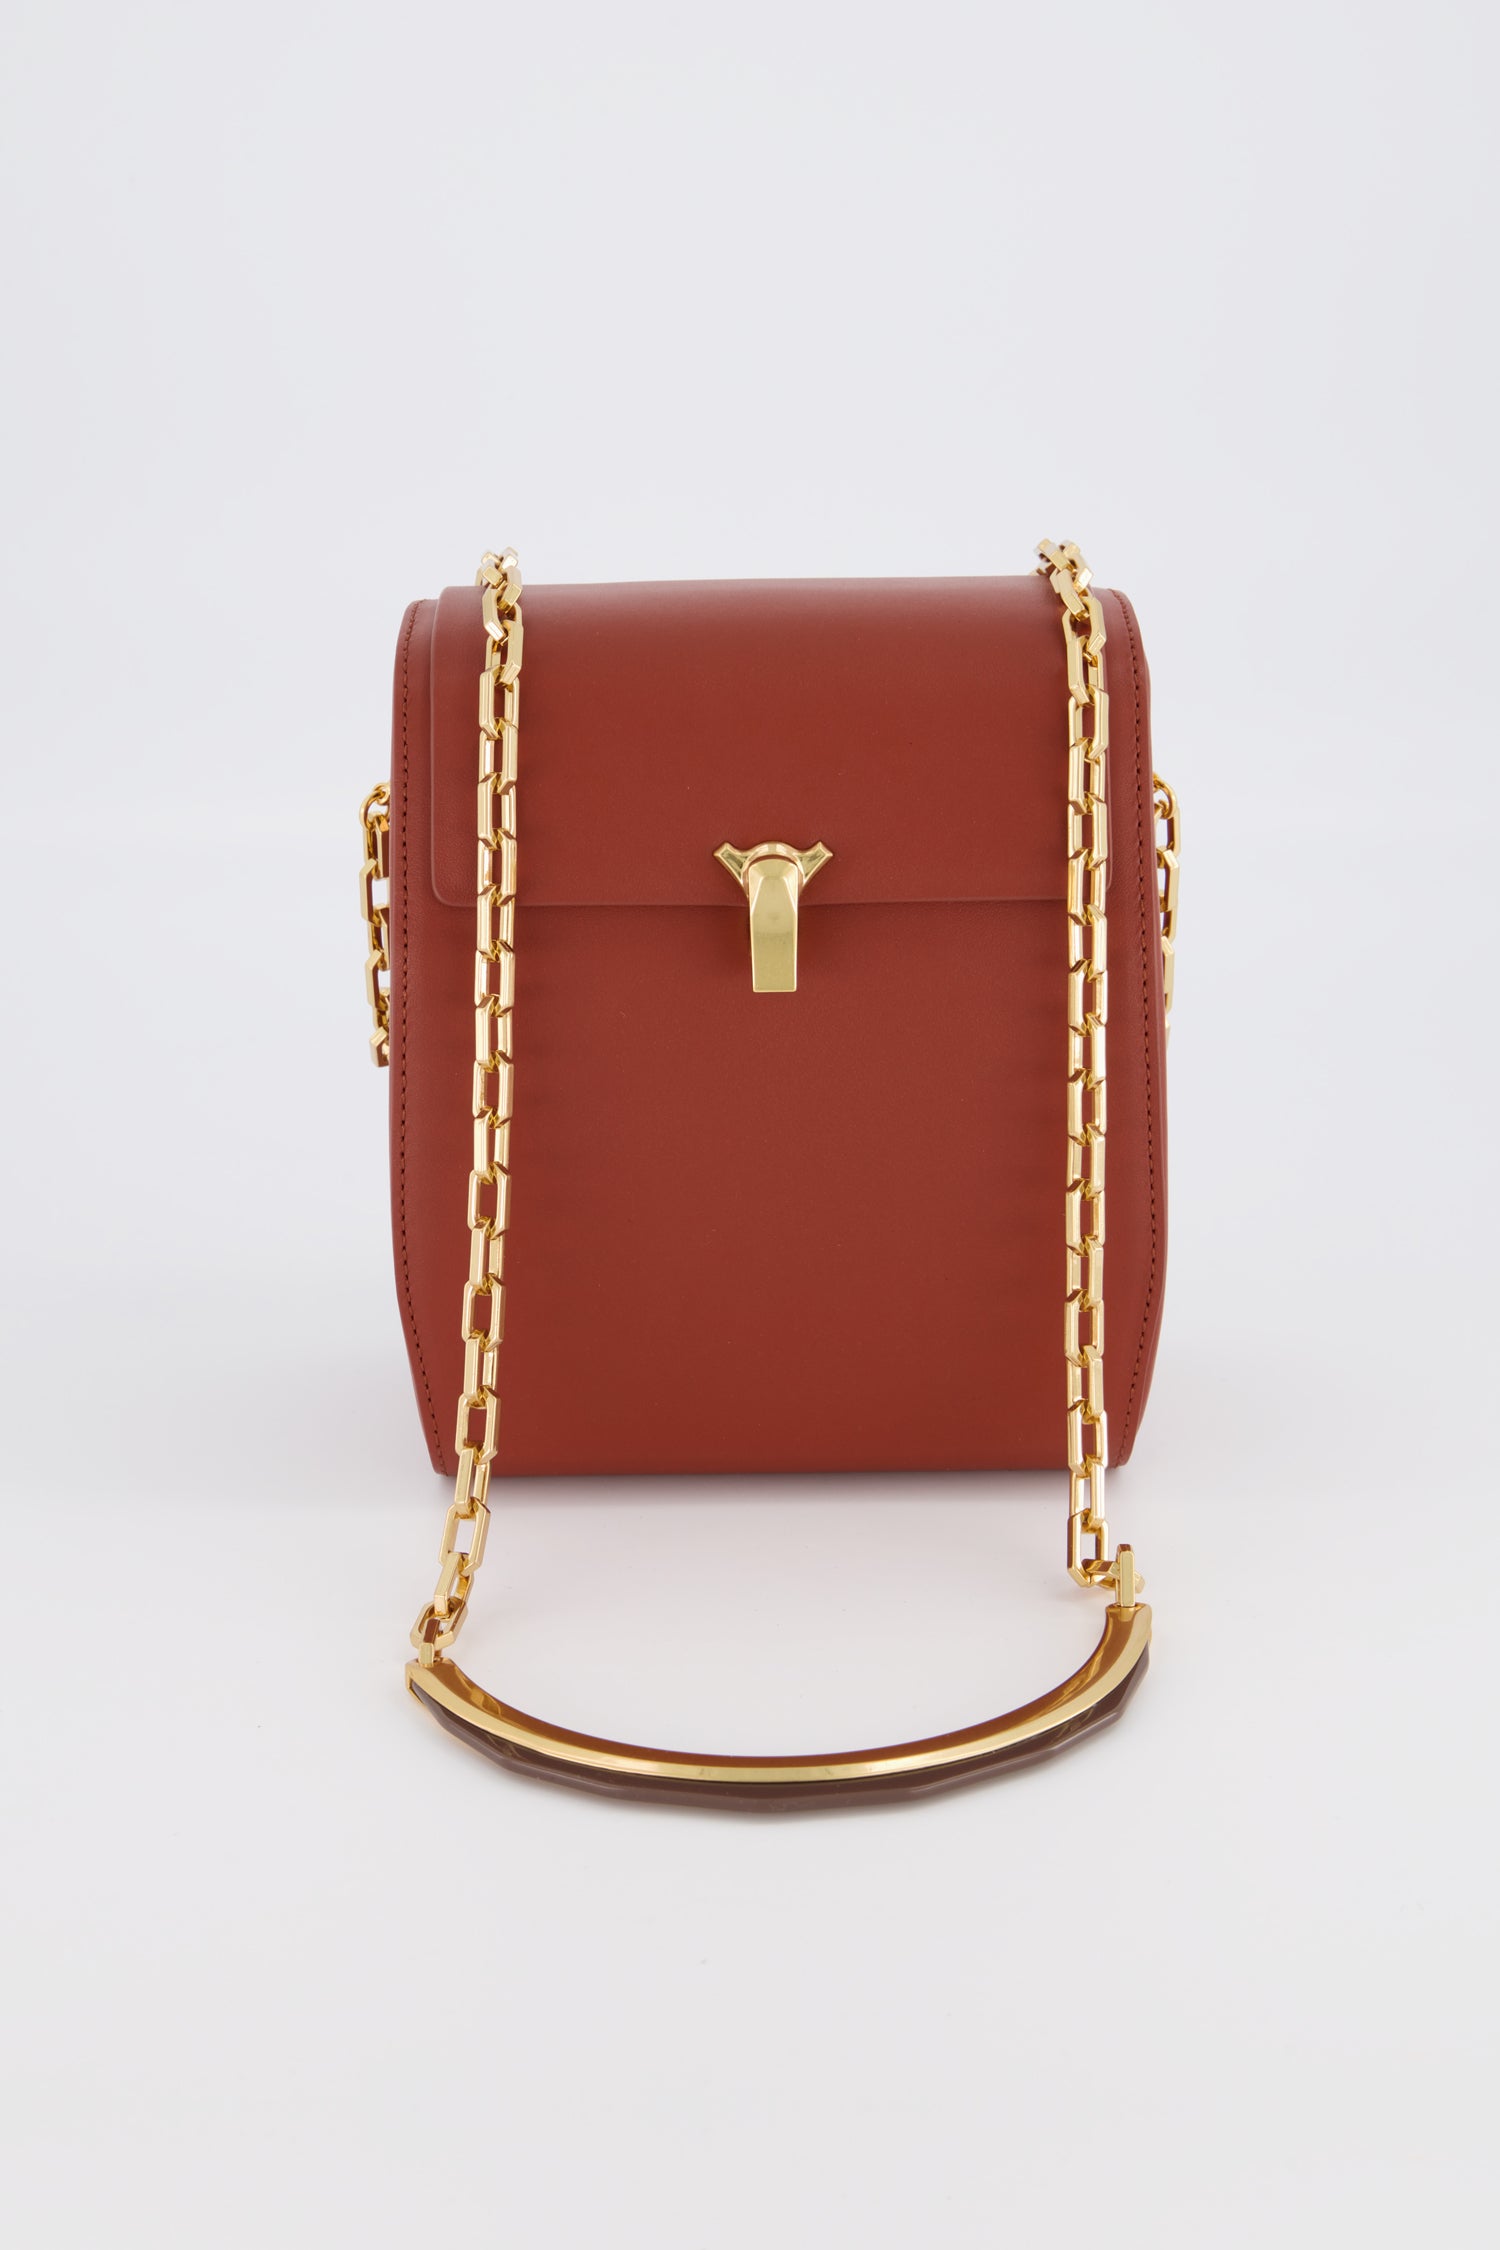 The Volon Tan PO Leather Box Bag